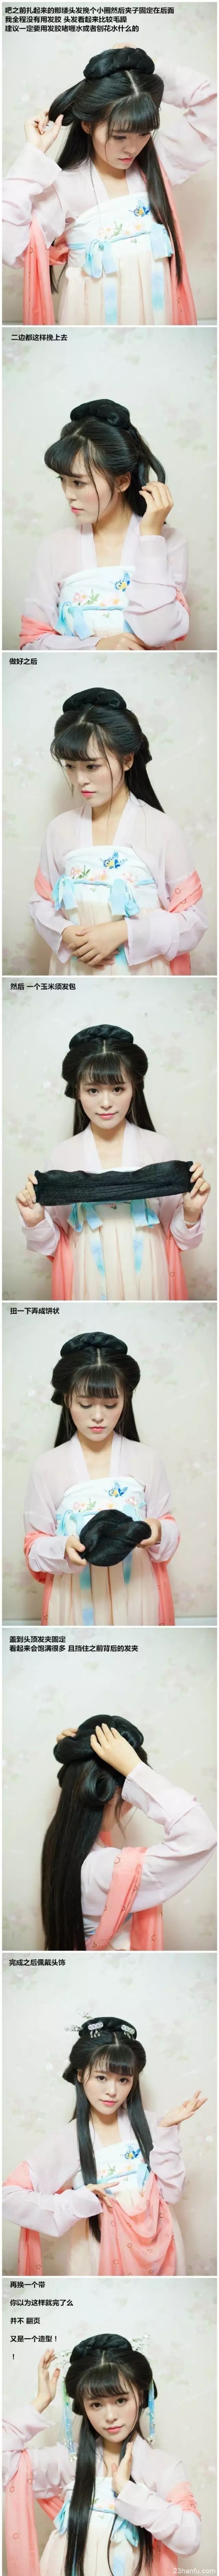 两款汉服发型，襦裙发型，古装盘发，齐刘海可爱温柔古装造型教程